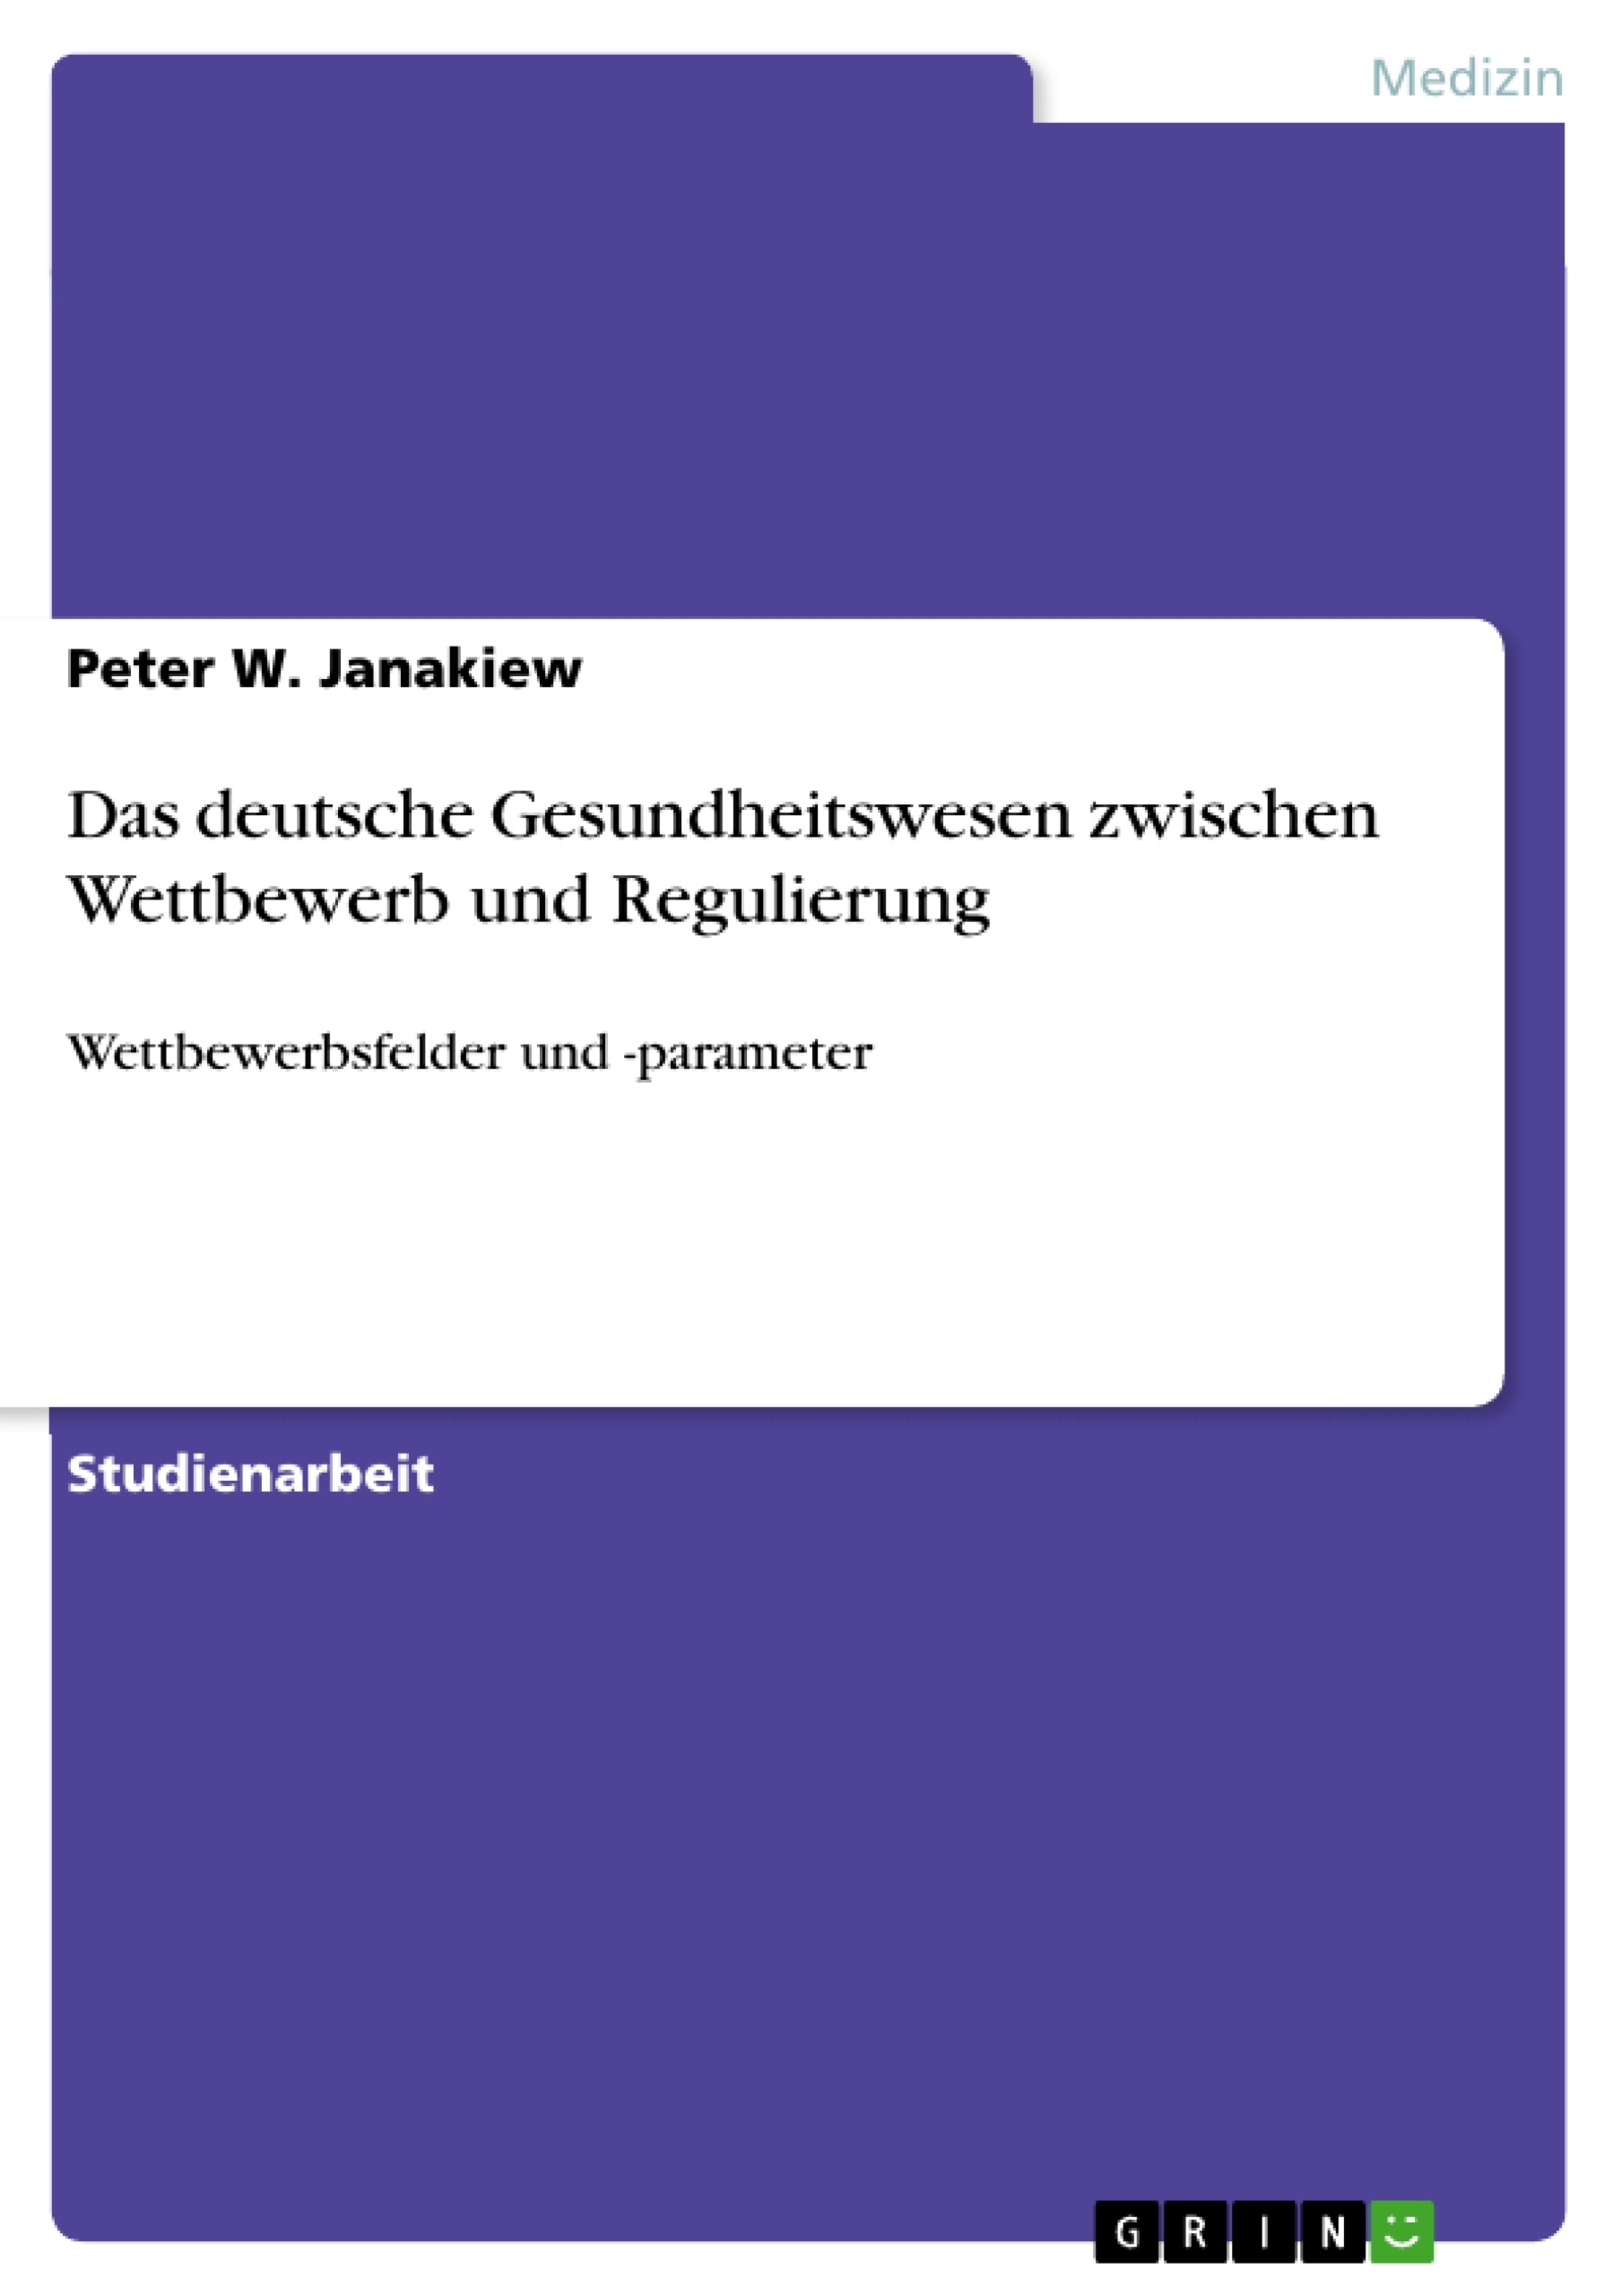 Title: Das deutsche Gesundheitswesen zwischen Wettbewerb und Regulierung